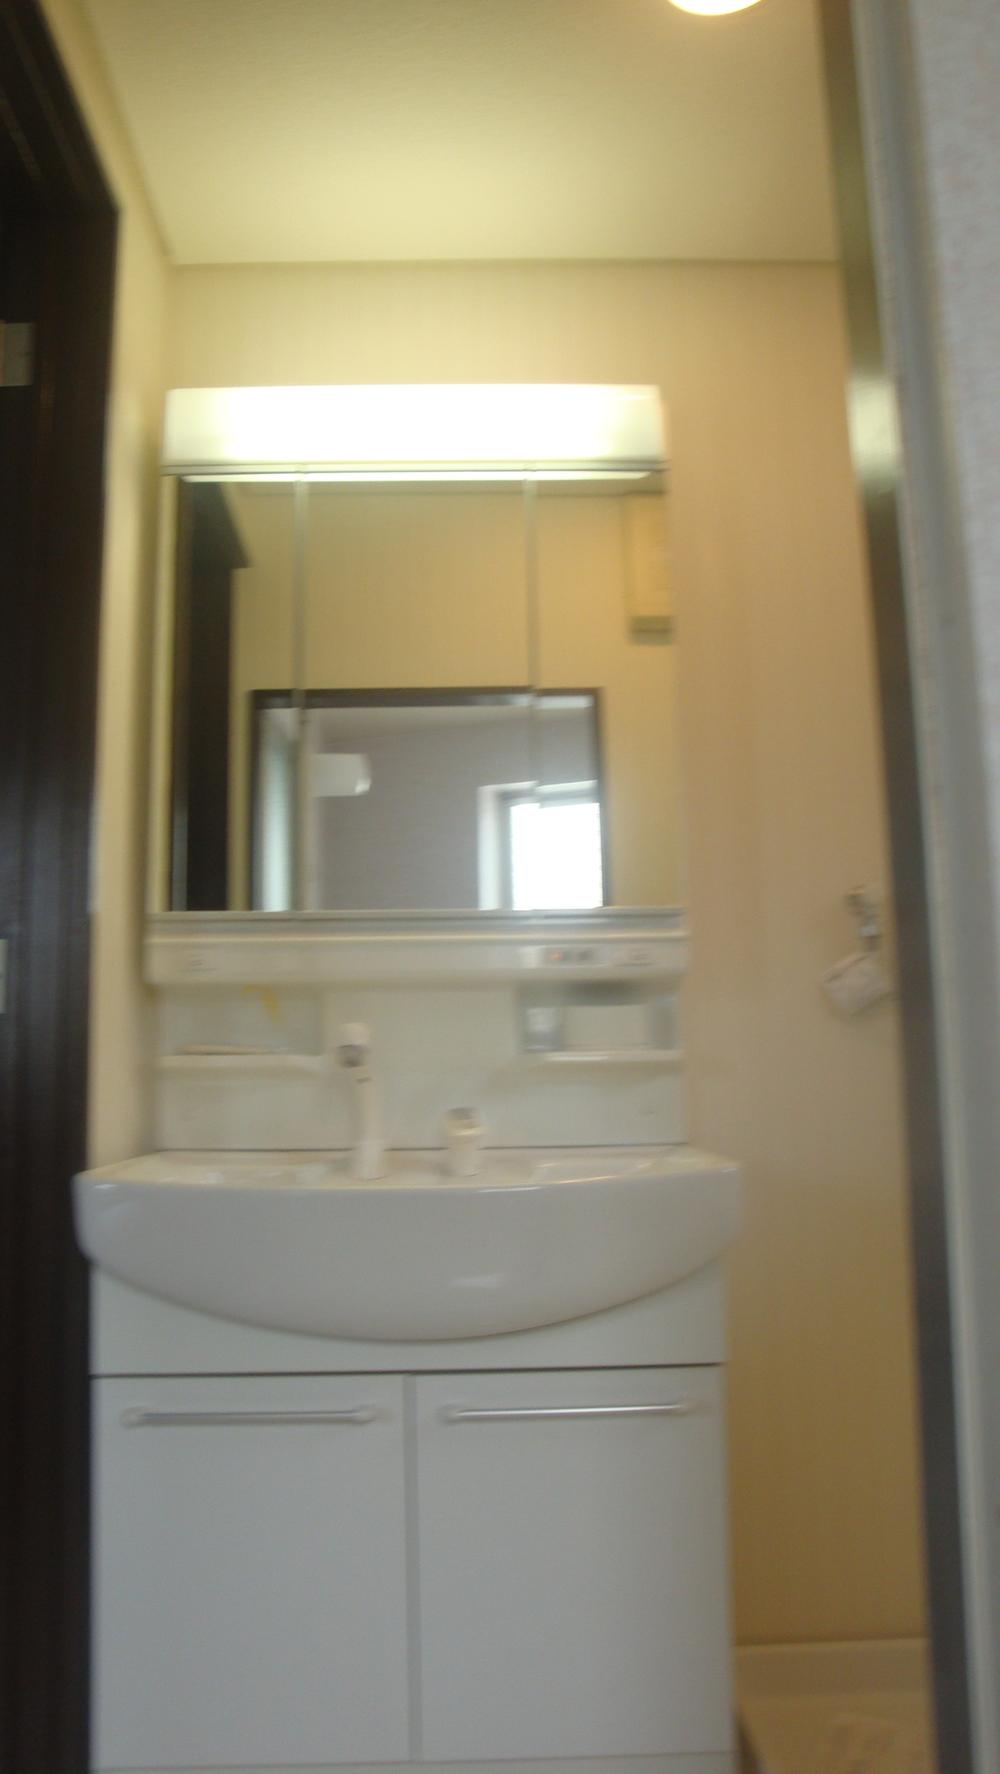 Wash basin, toilet. Indoor (August 5, 2013) Shooting